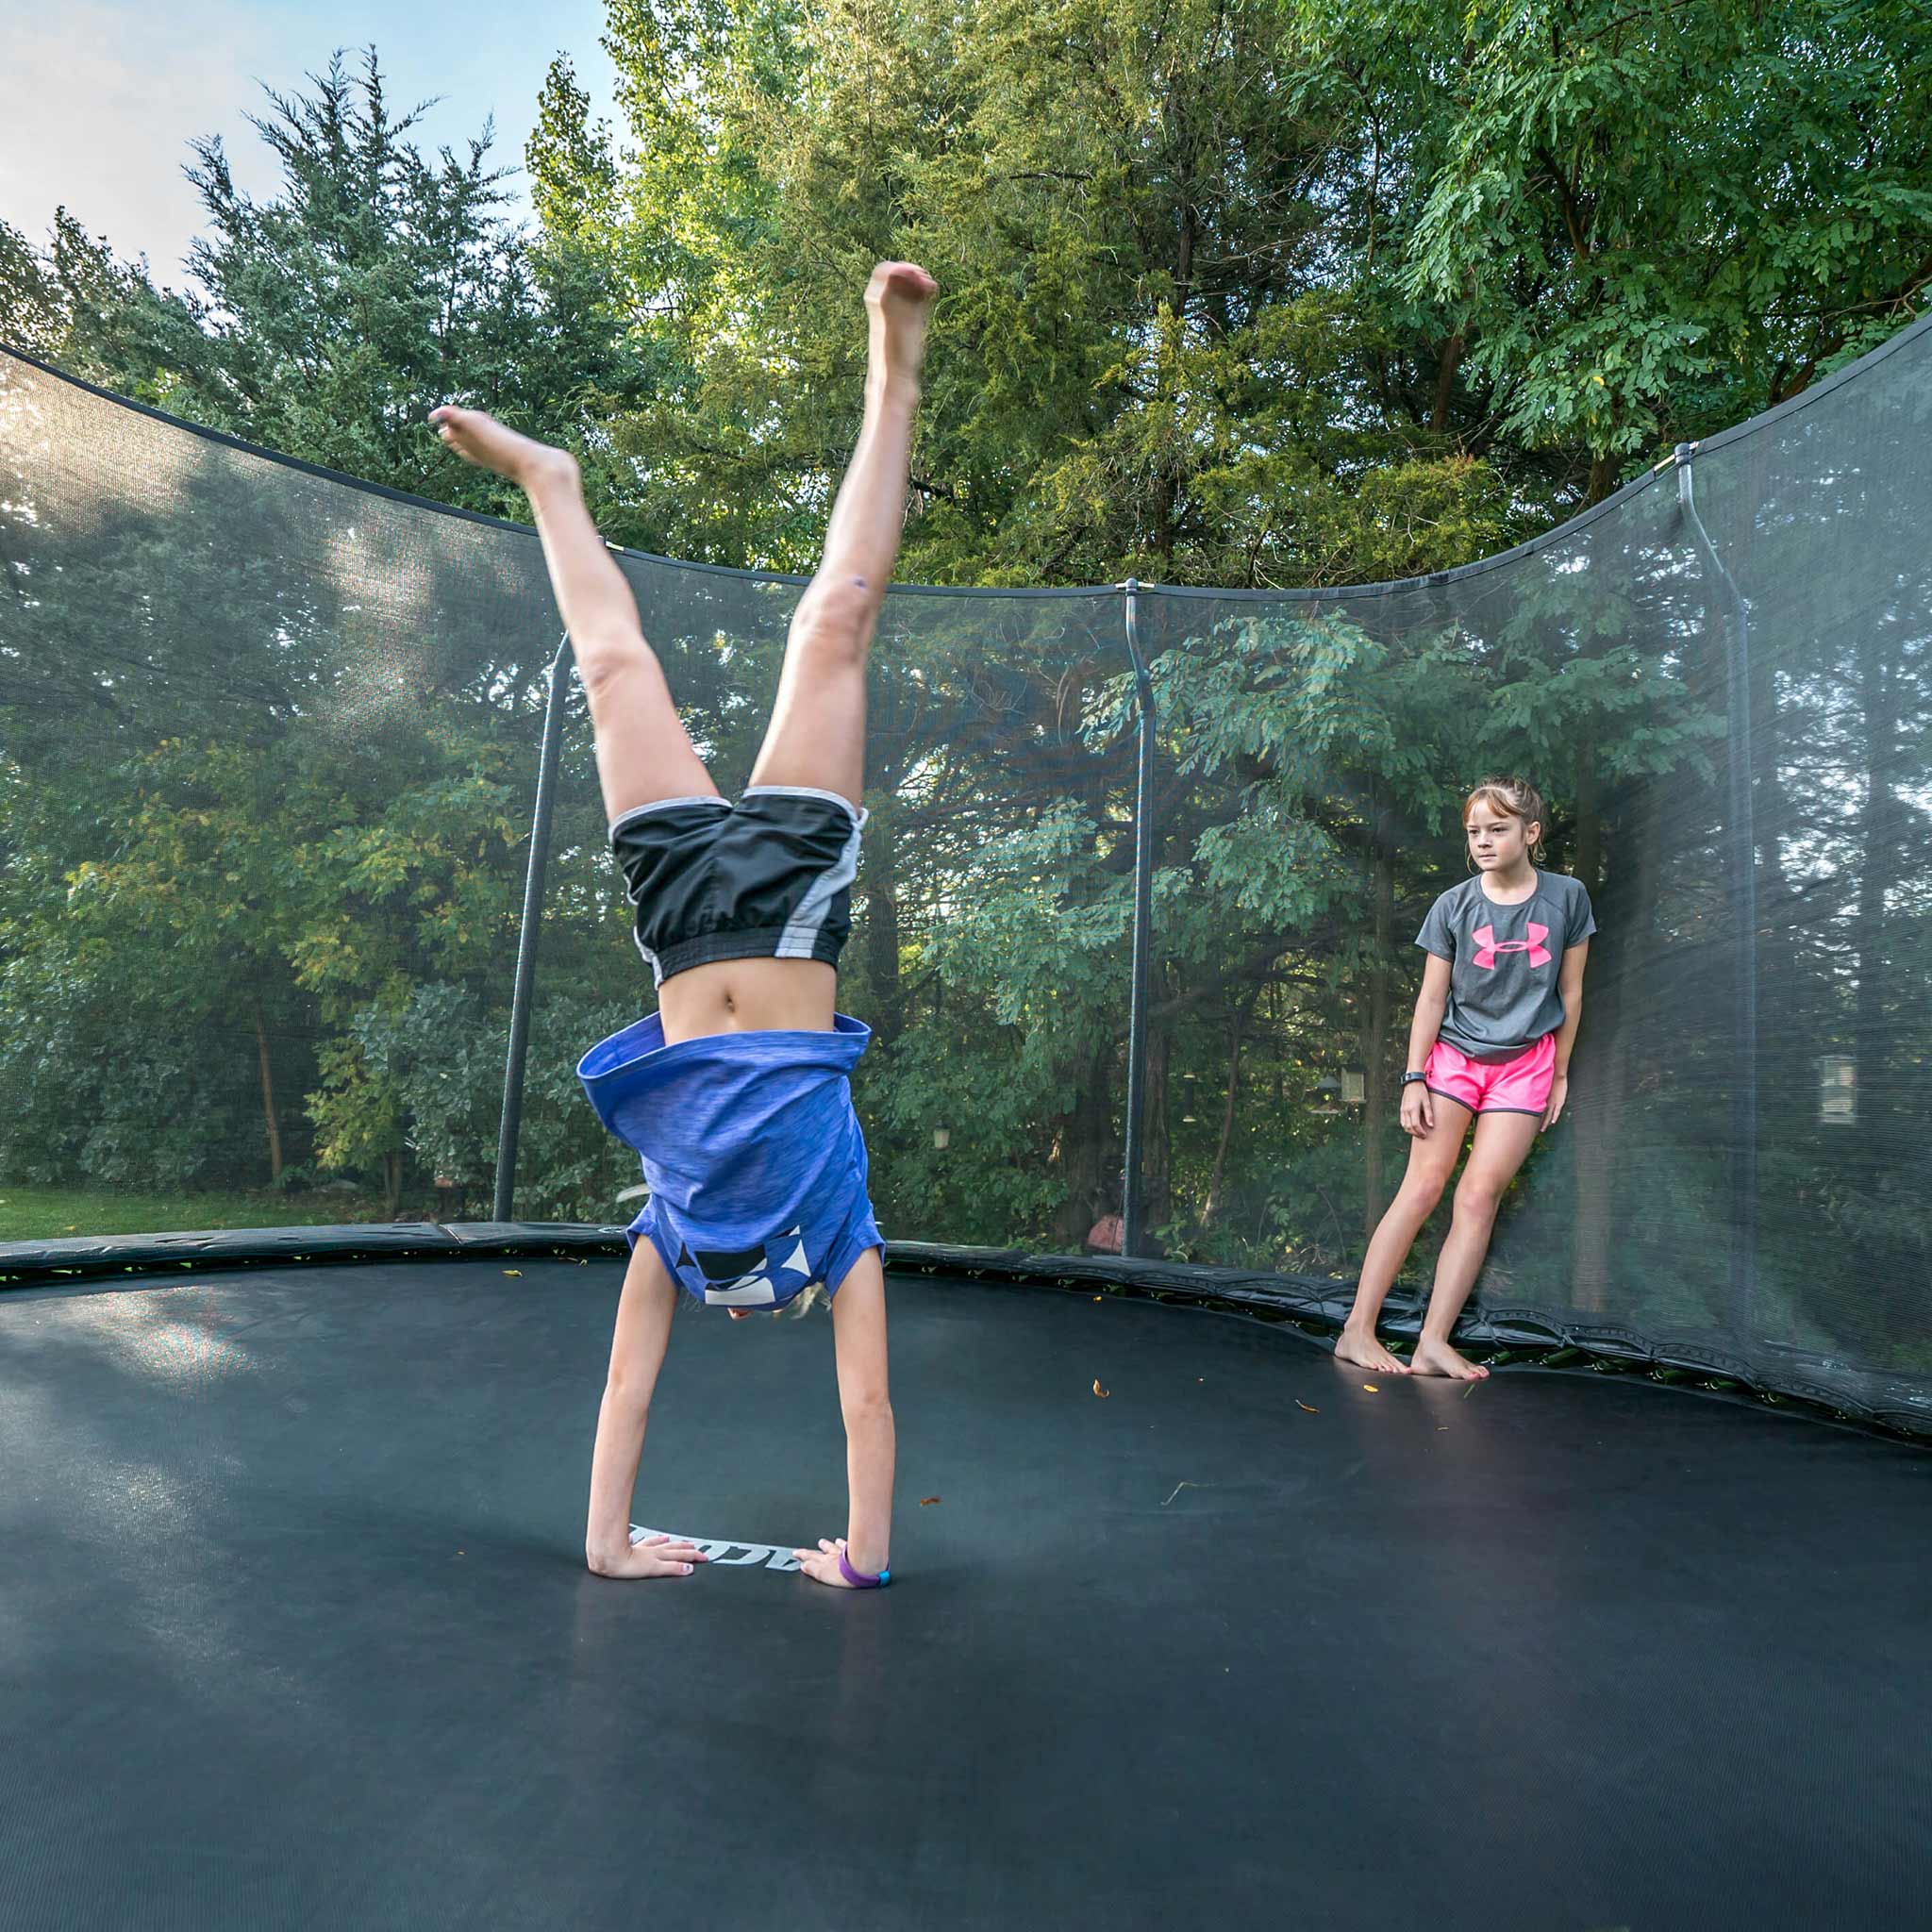 Une fille fait du handstand sur un trampoline Acon, sous le regard d'un ami.